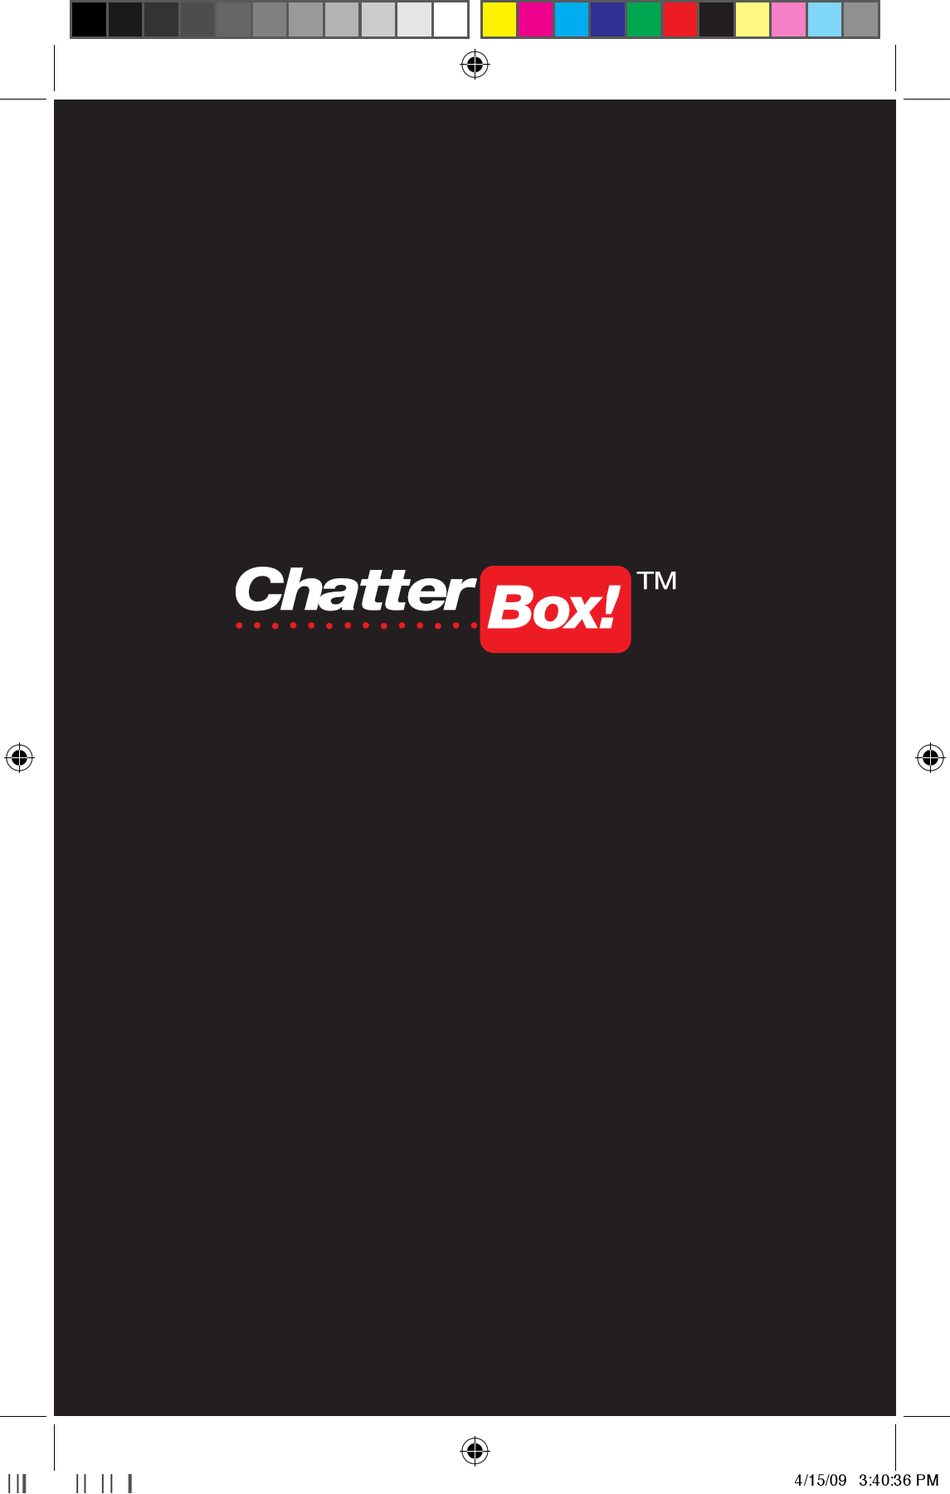 chatterbox xbi 2